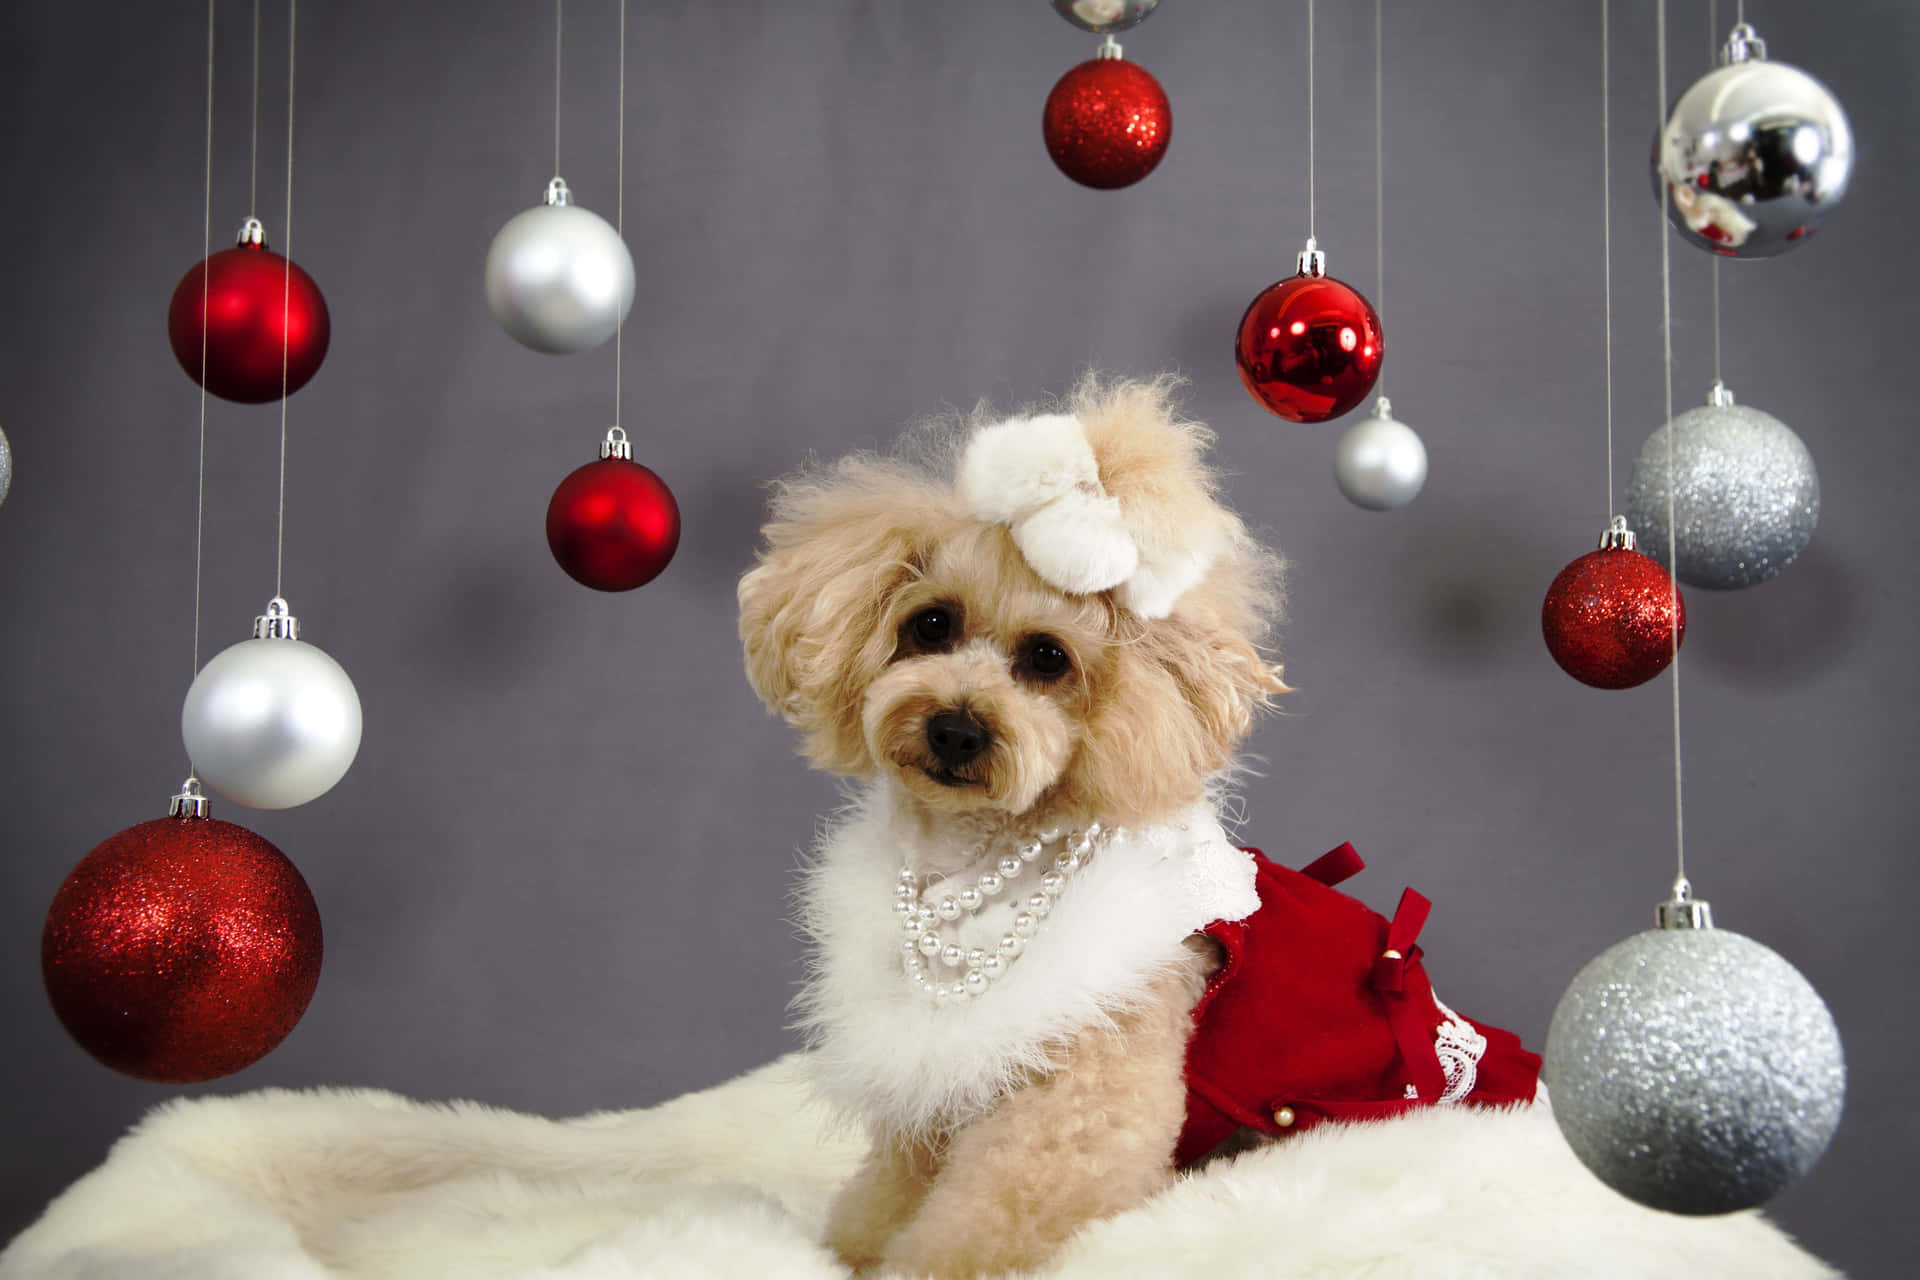 Imagende Decoración Navideña De Un Perro Poodle En Navidad.